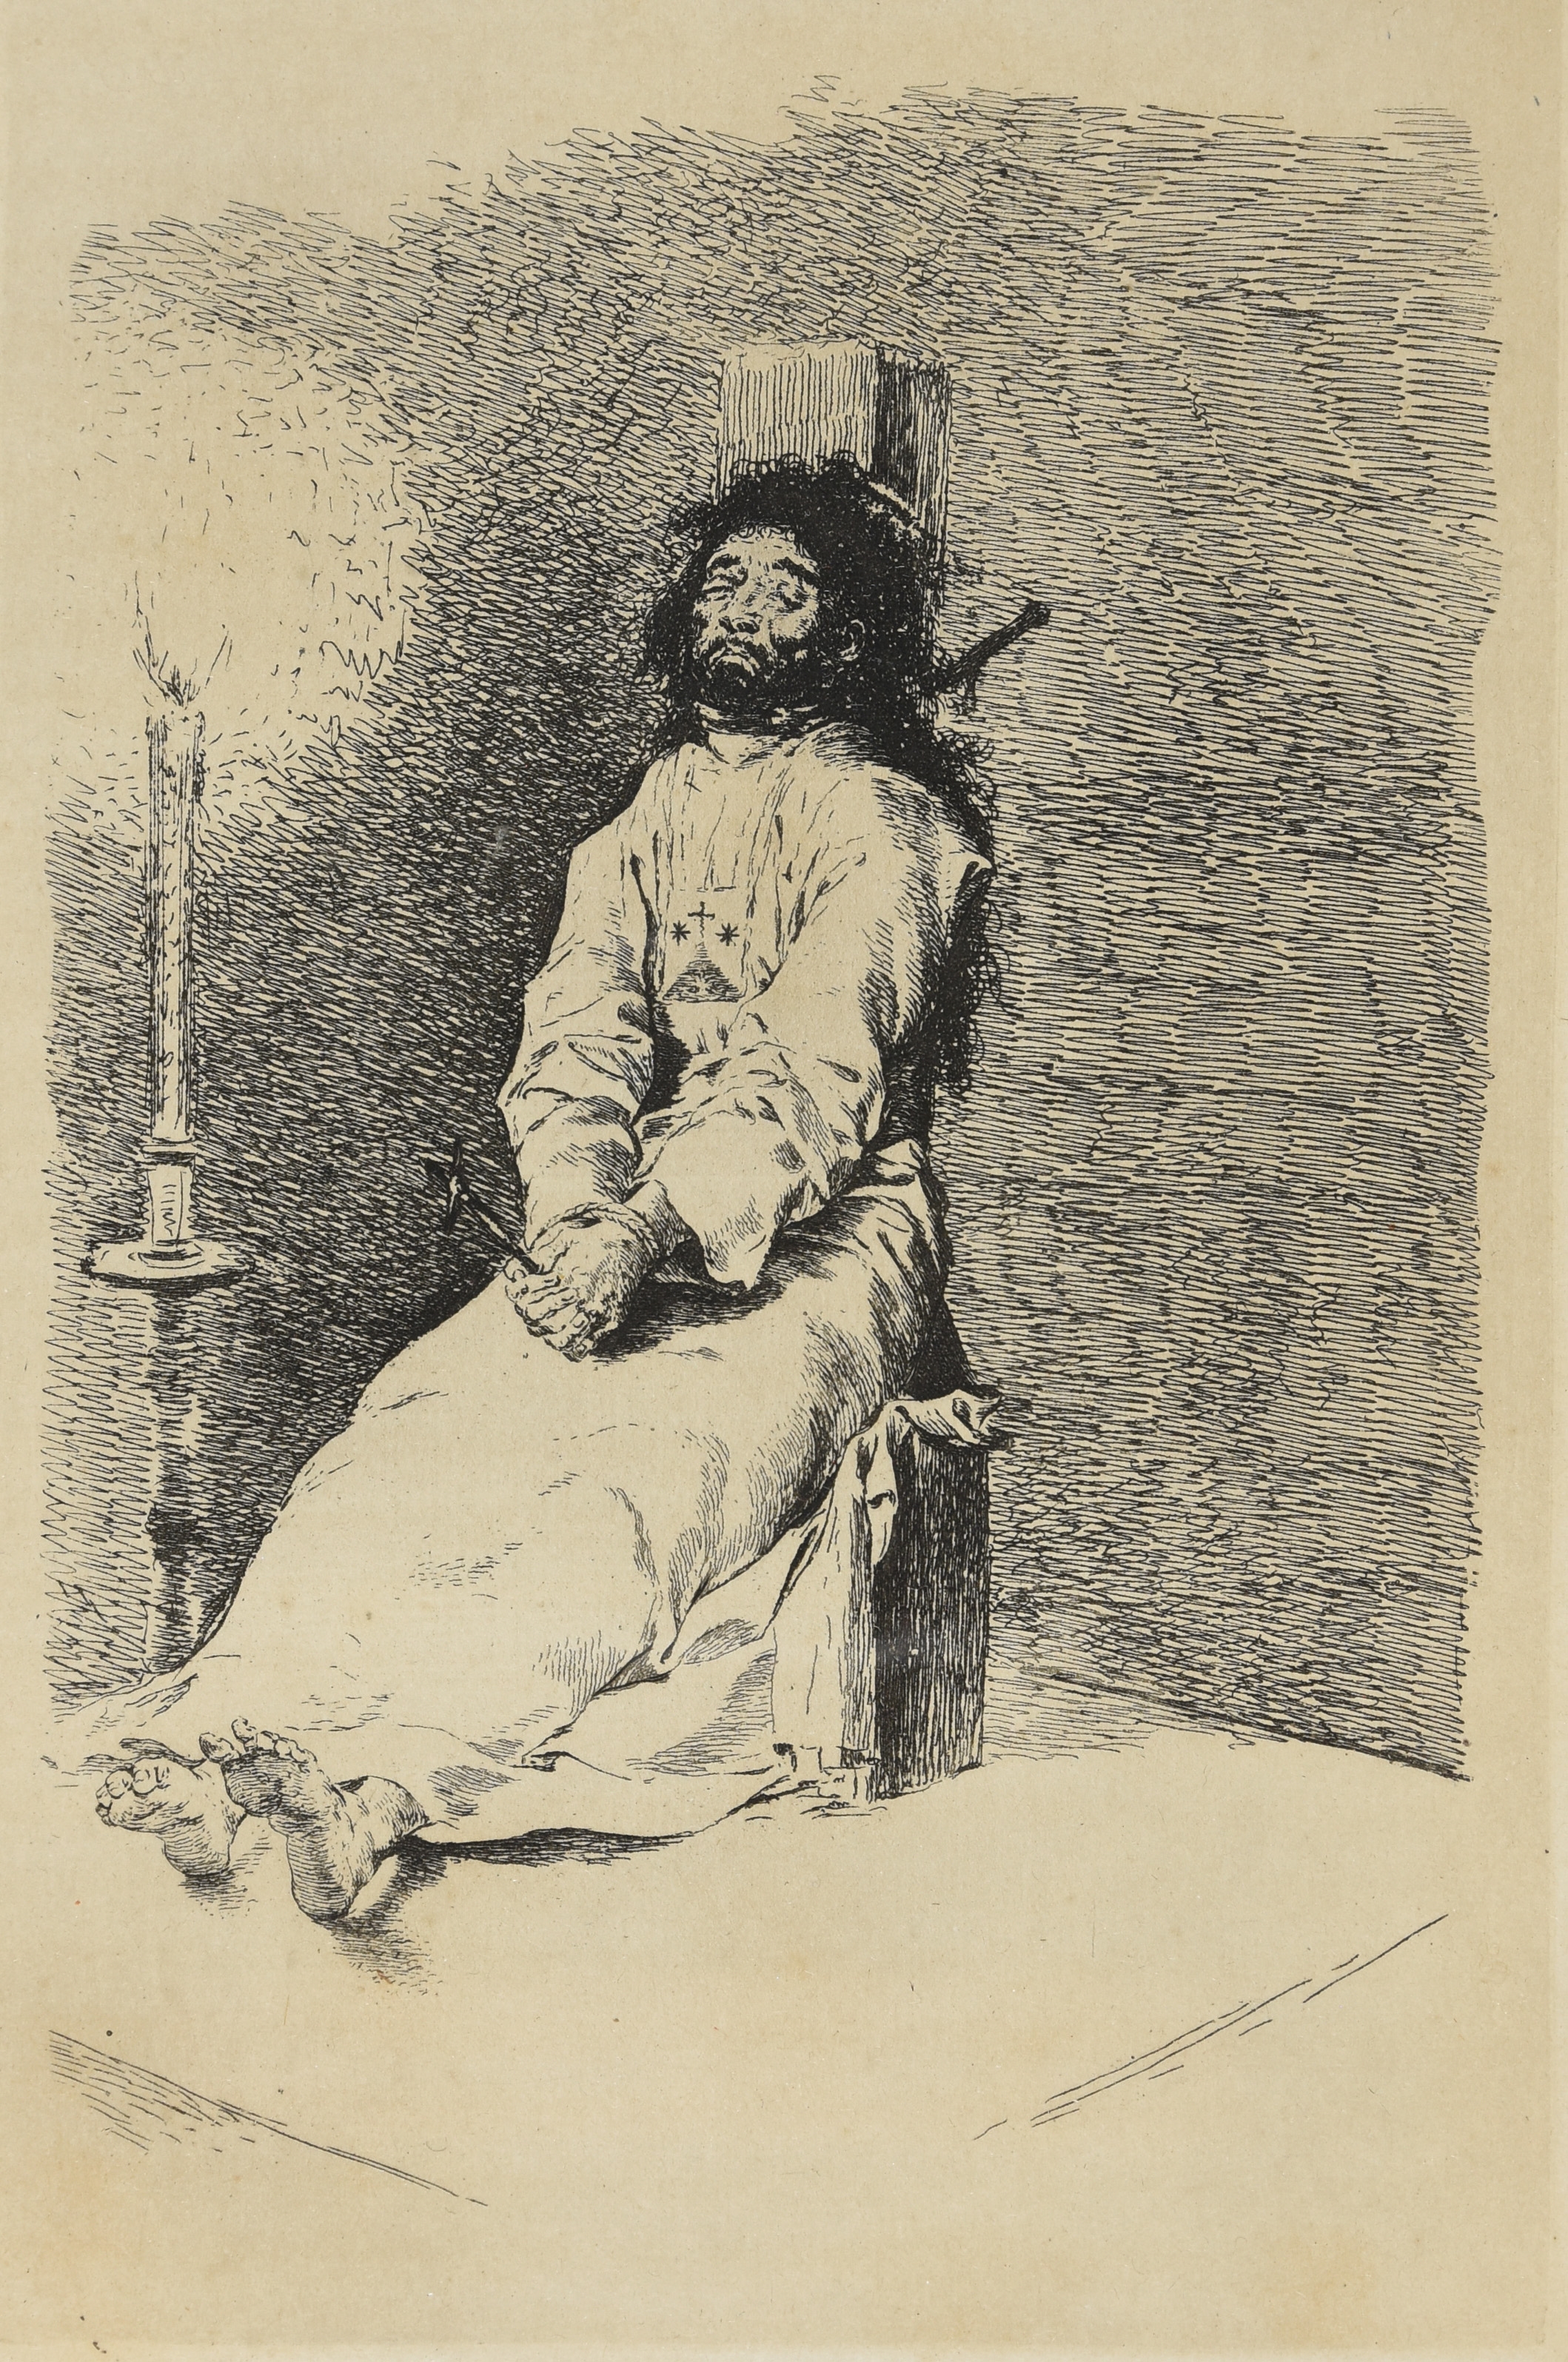 Artwork by Francisco José de Goya y Lucientes, El Agarrotado (The garrotted man), Made of Etching